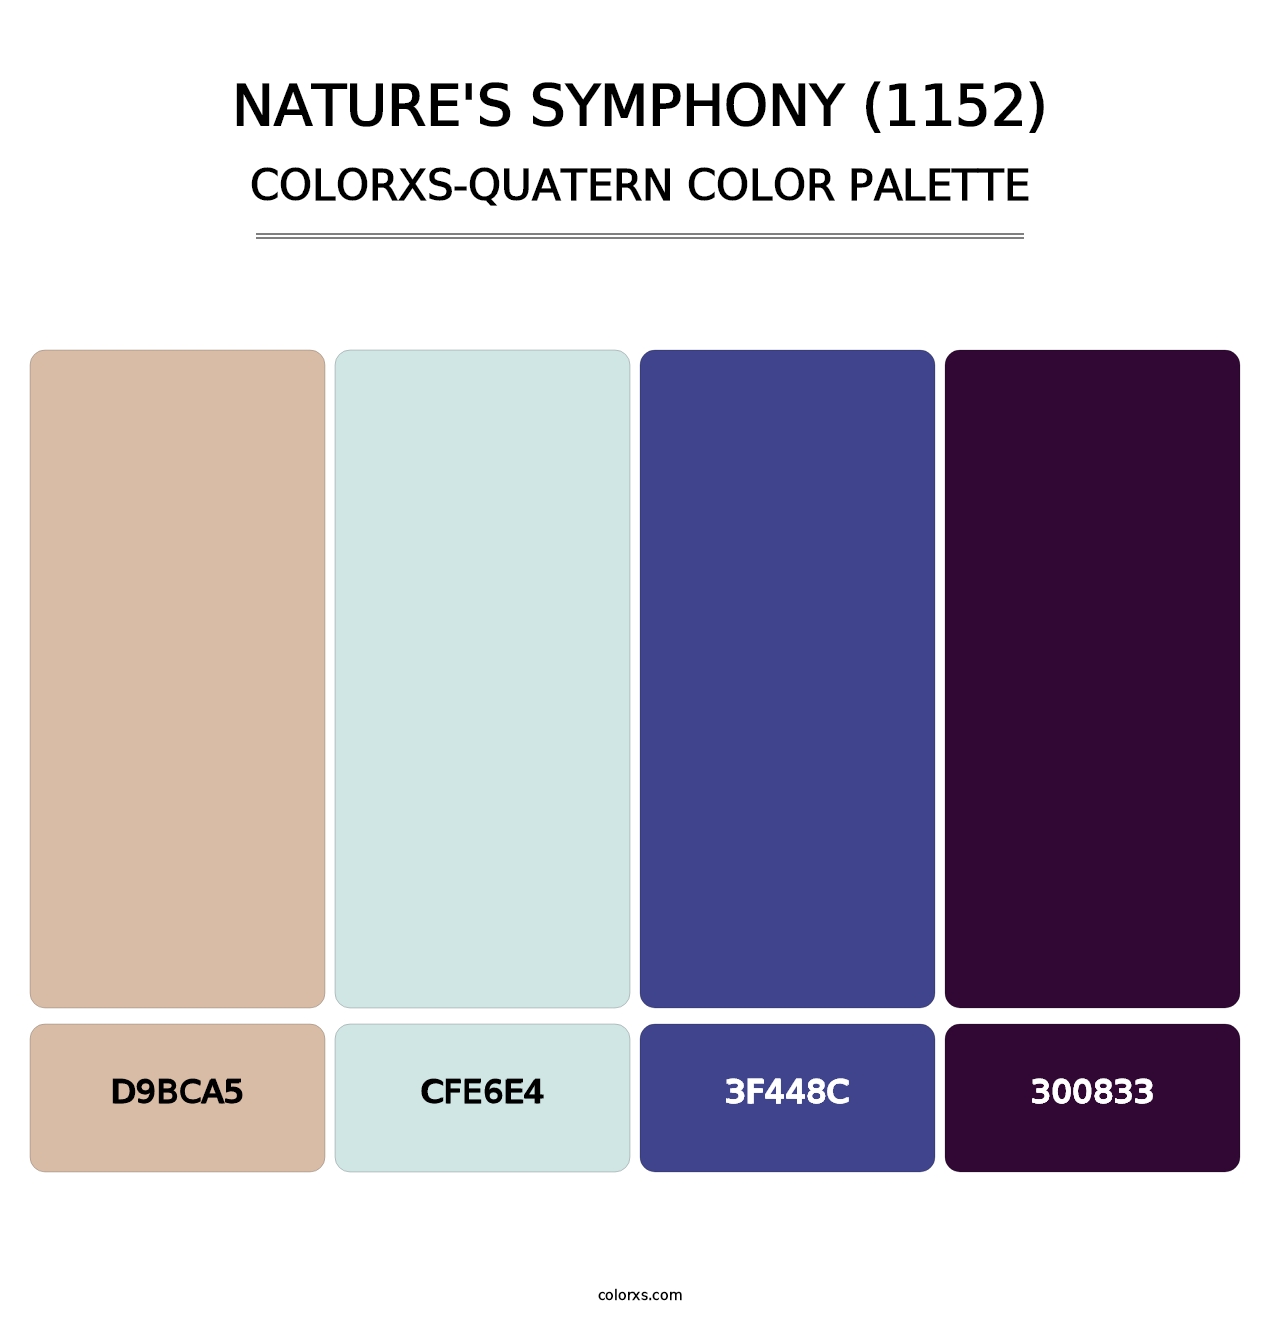 Nature's Symphony (1152) - Colorxs Quatern Palette